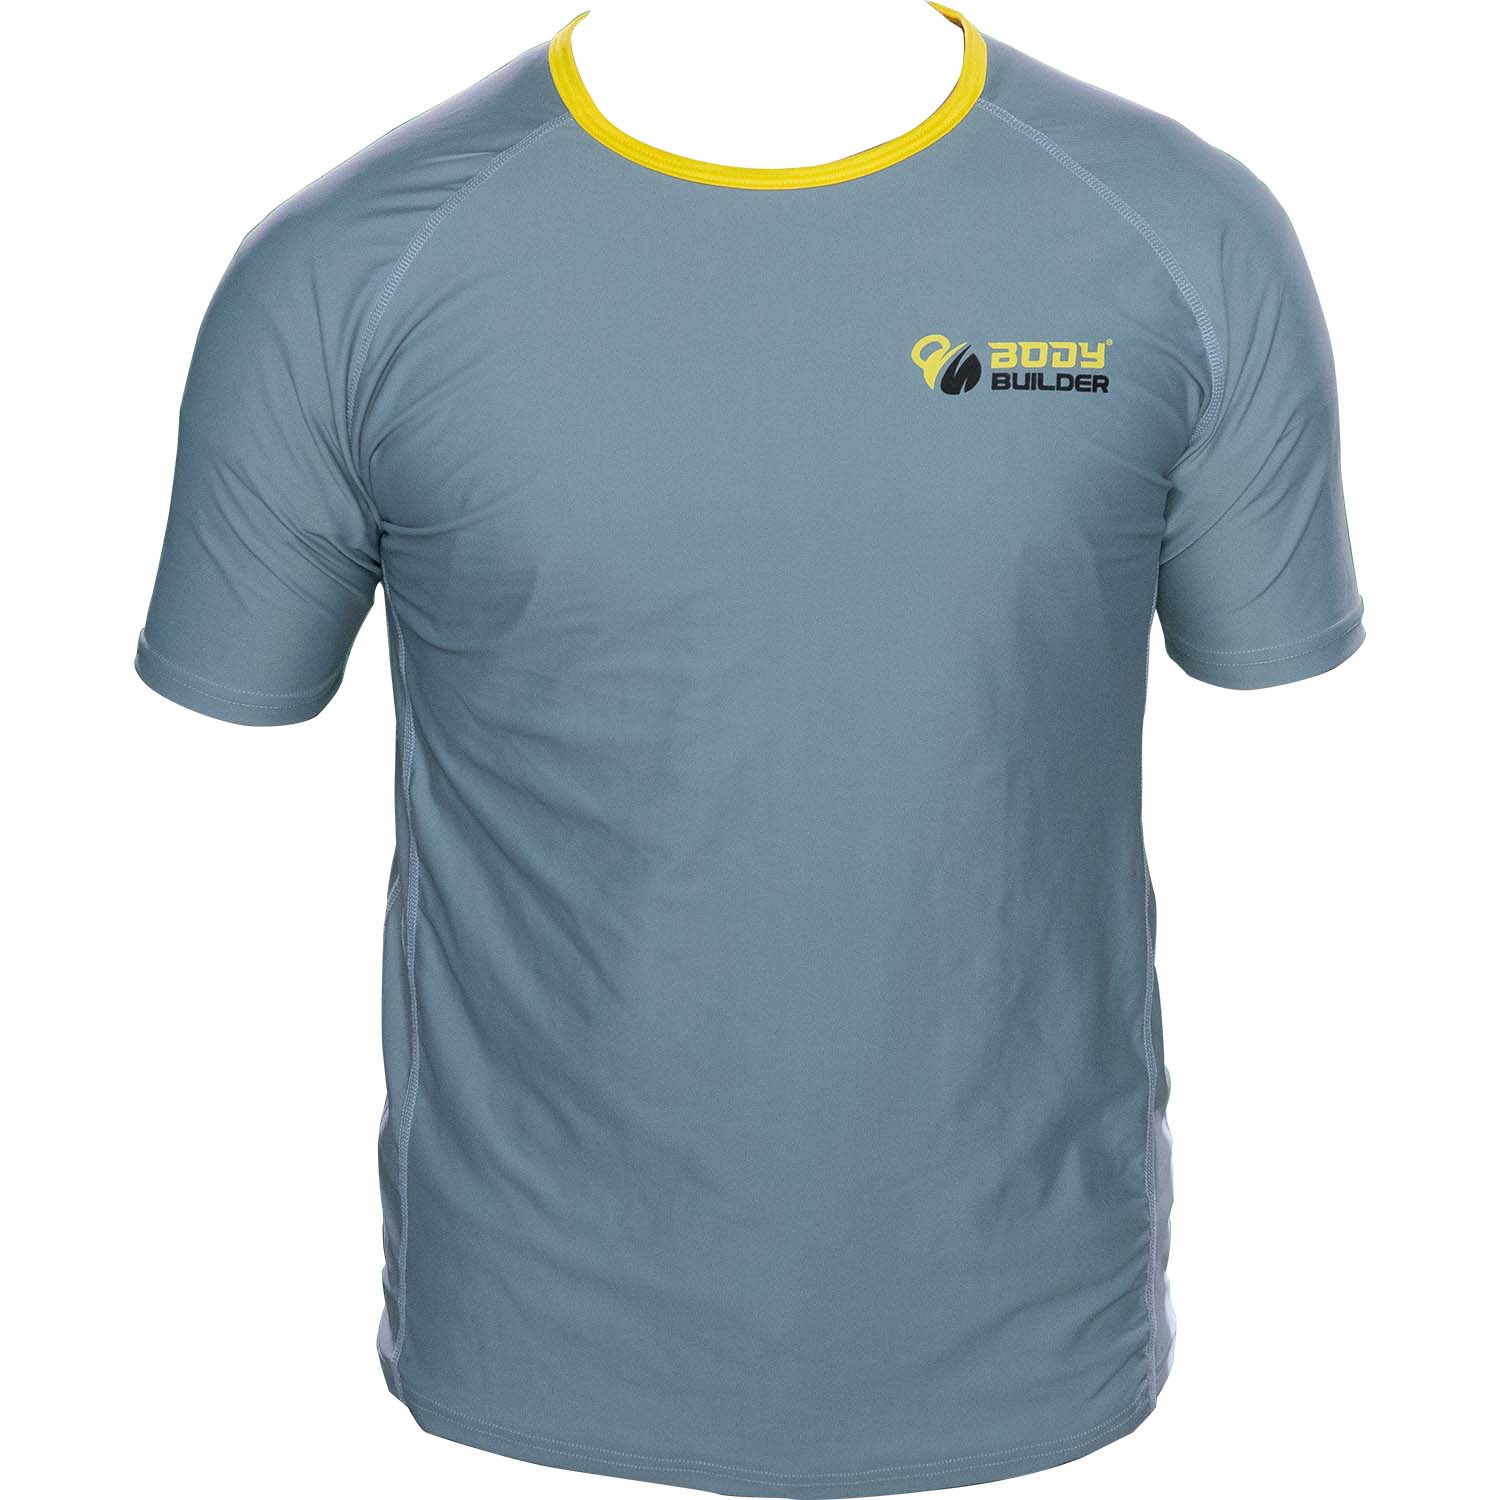 Body Builder T-Shirt Premium, S, Grey-Yellow